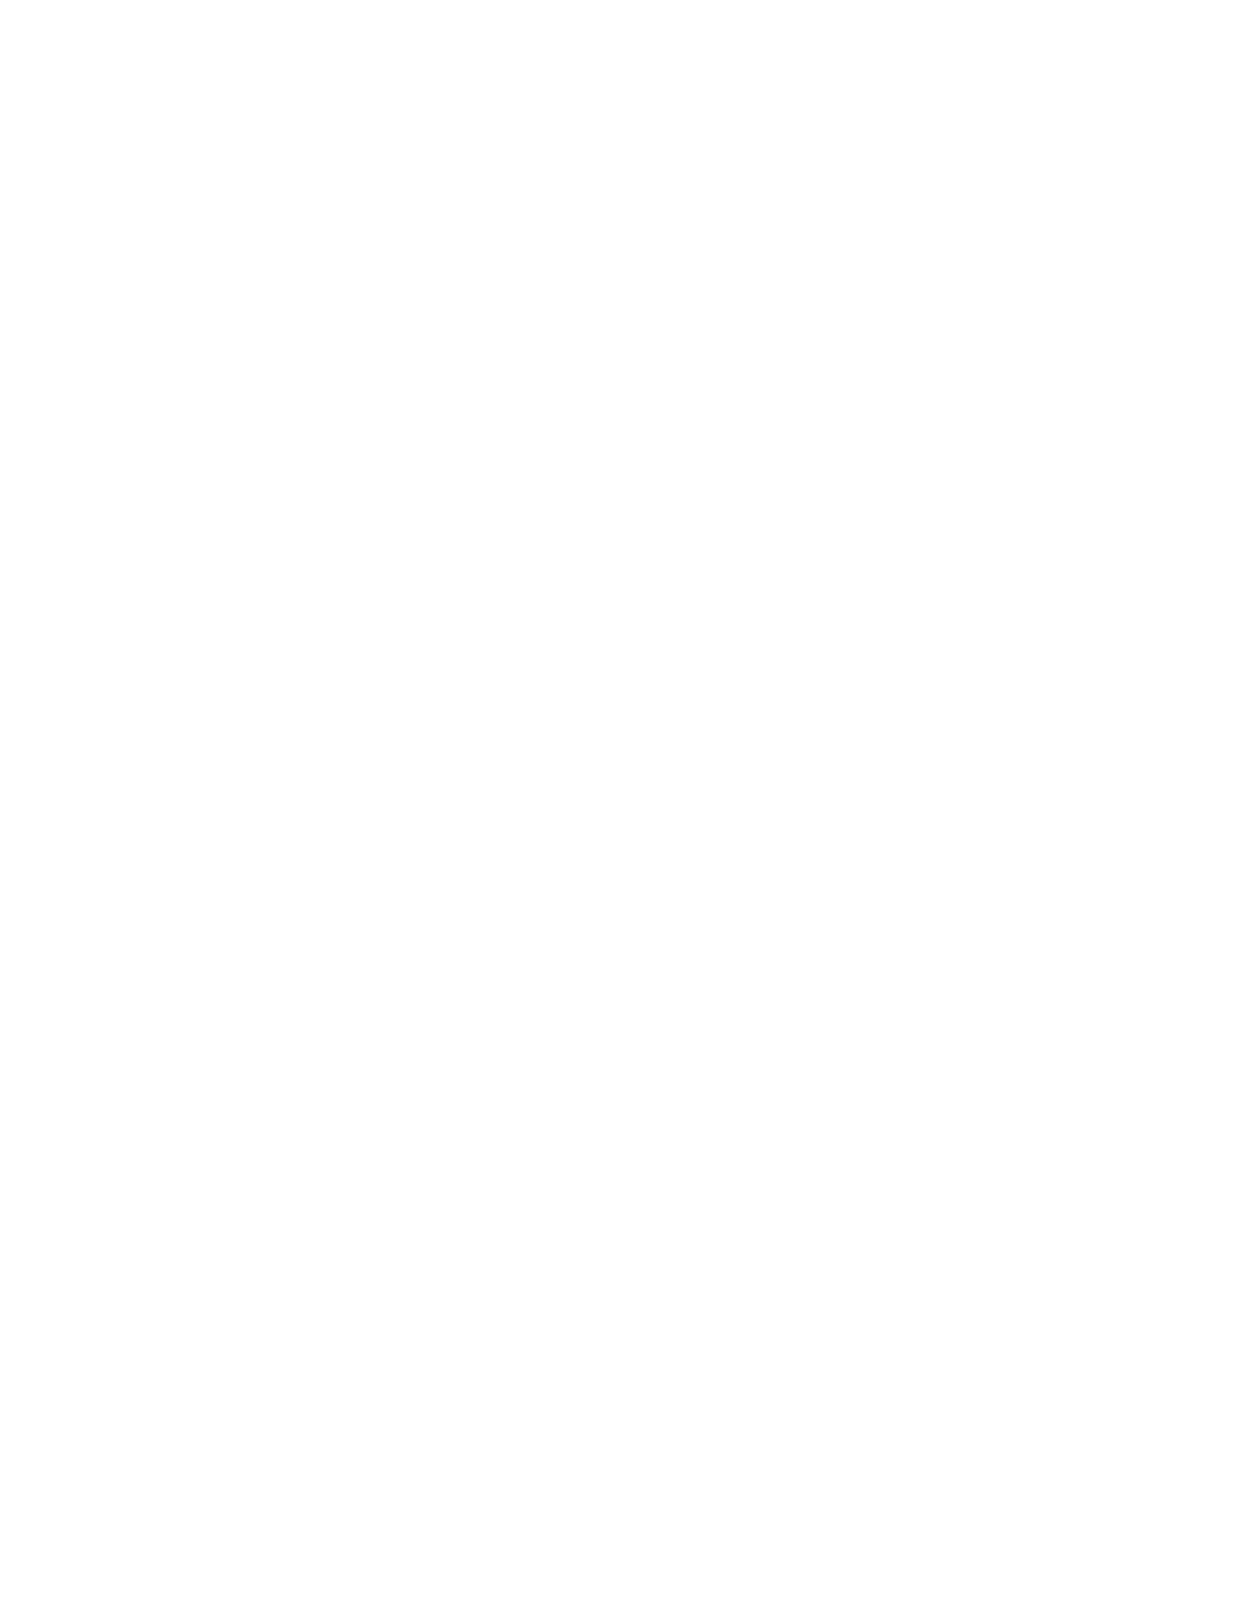 Palantir logo pour fonds sombres (PNG transparent)